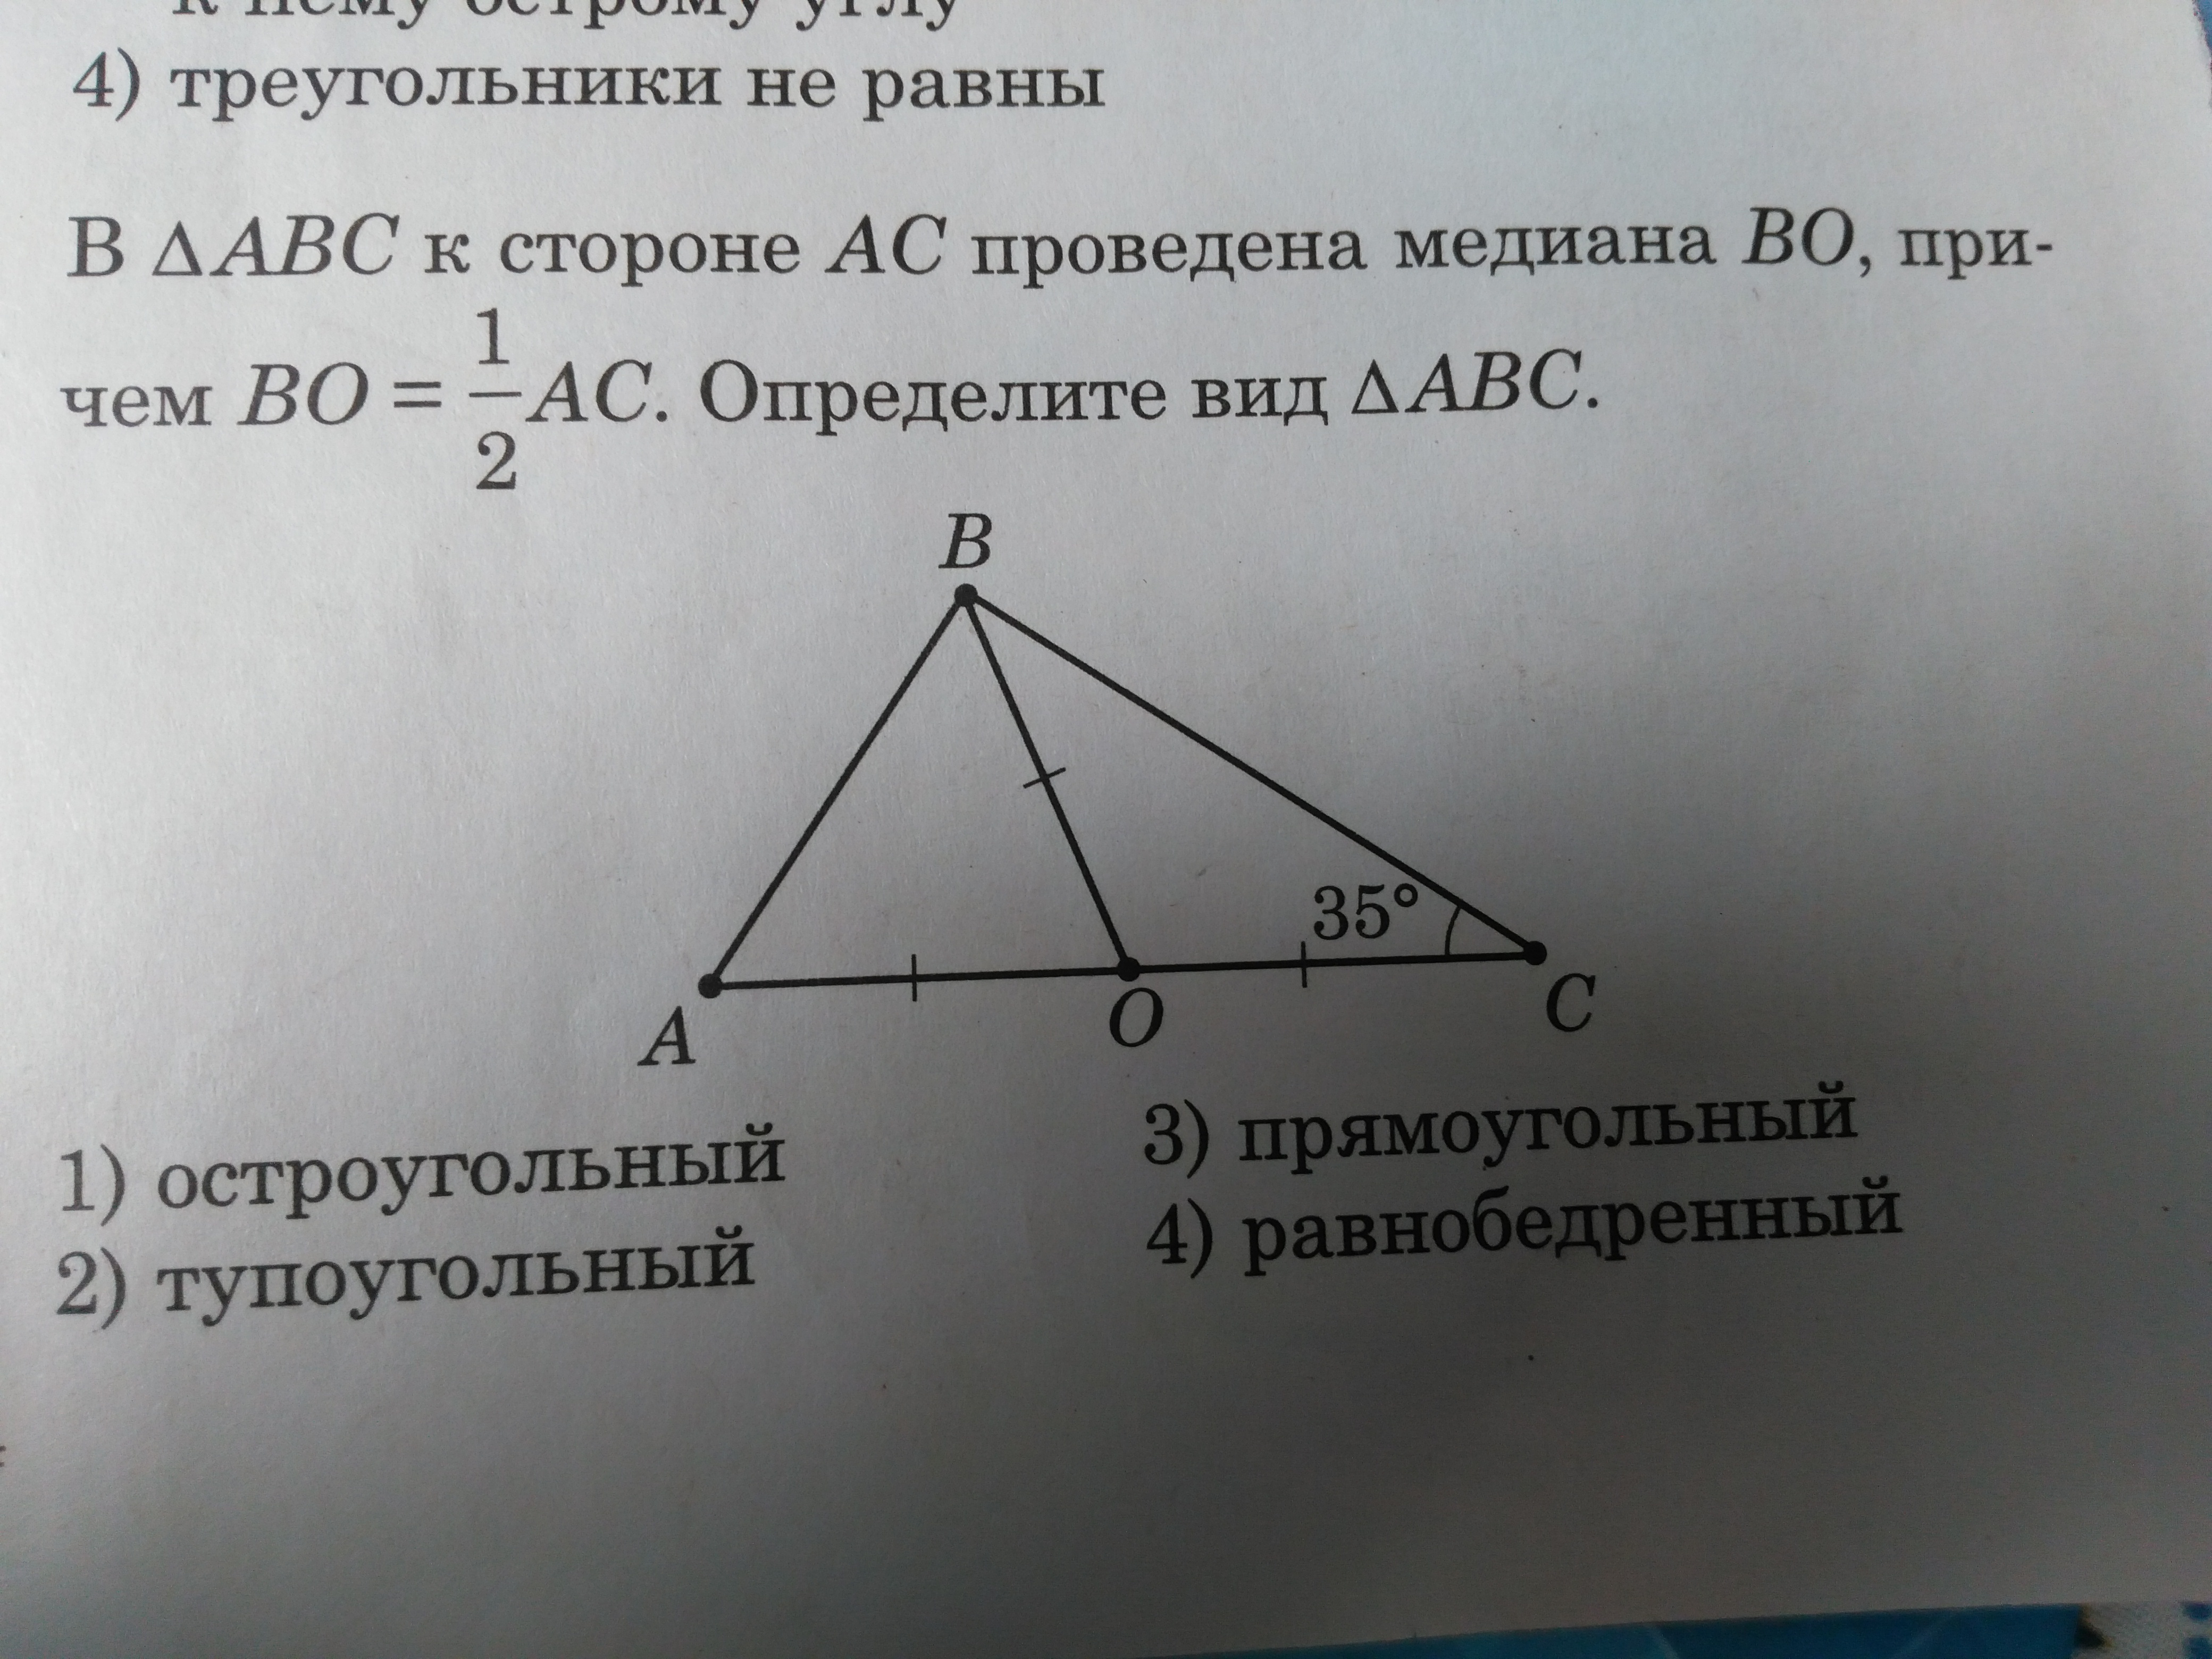 В равностороннем треугольнике abc провели высоту ah. Опрелелите вид треугольник. Отметь треугольники которые содержат сторону MN. Отметь треугольники которые содержат сторону Ен. Найдите медиану, проведенную к стороне АС..